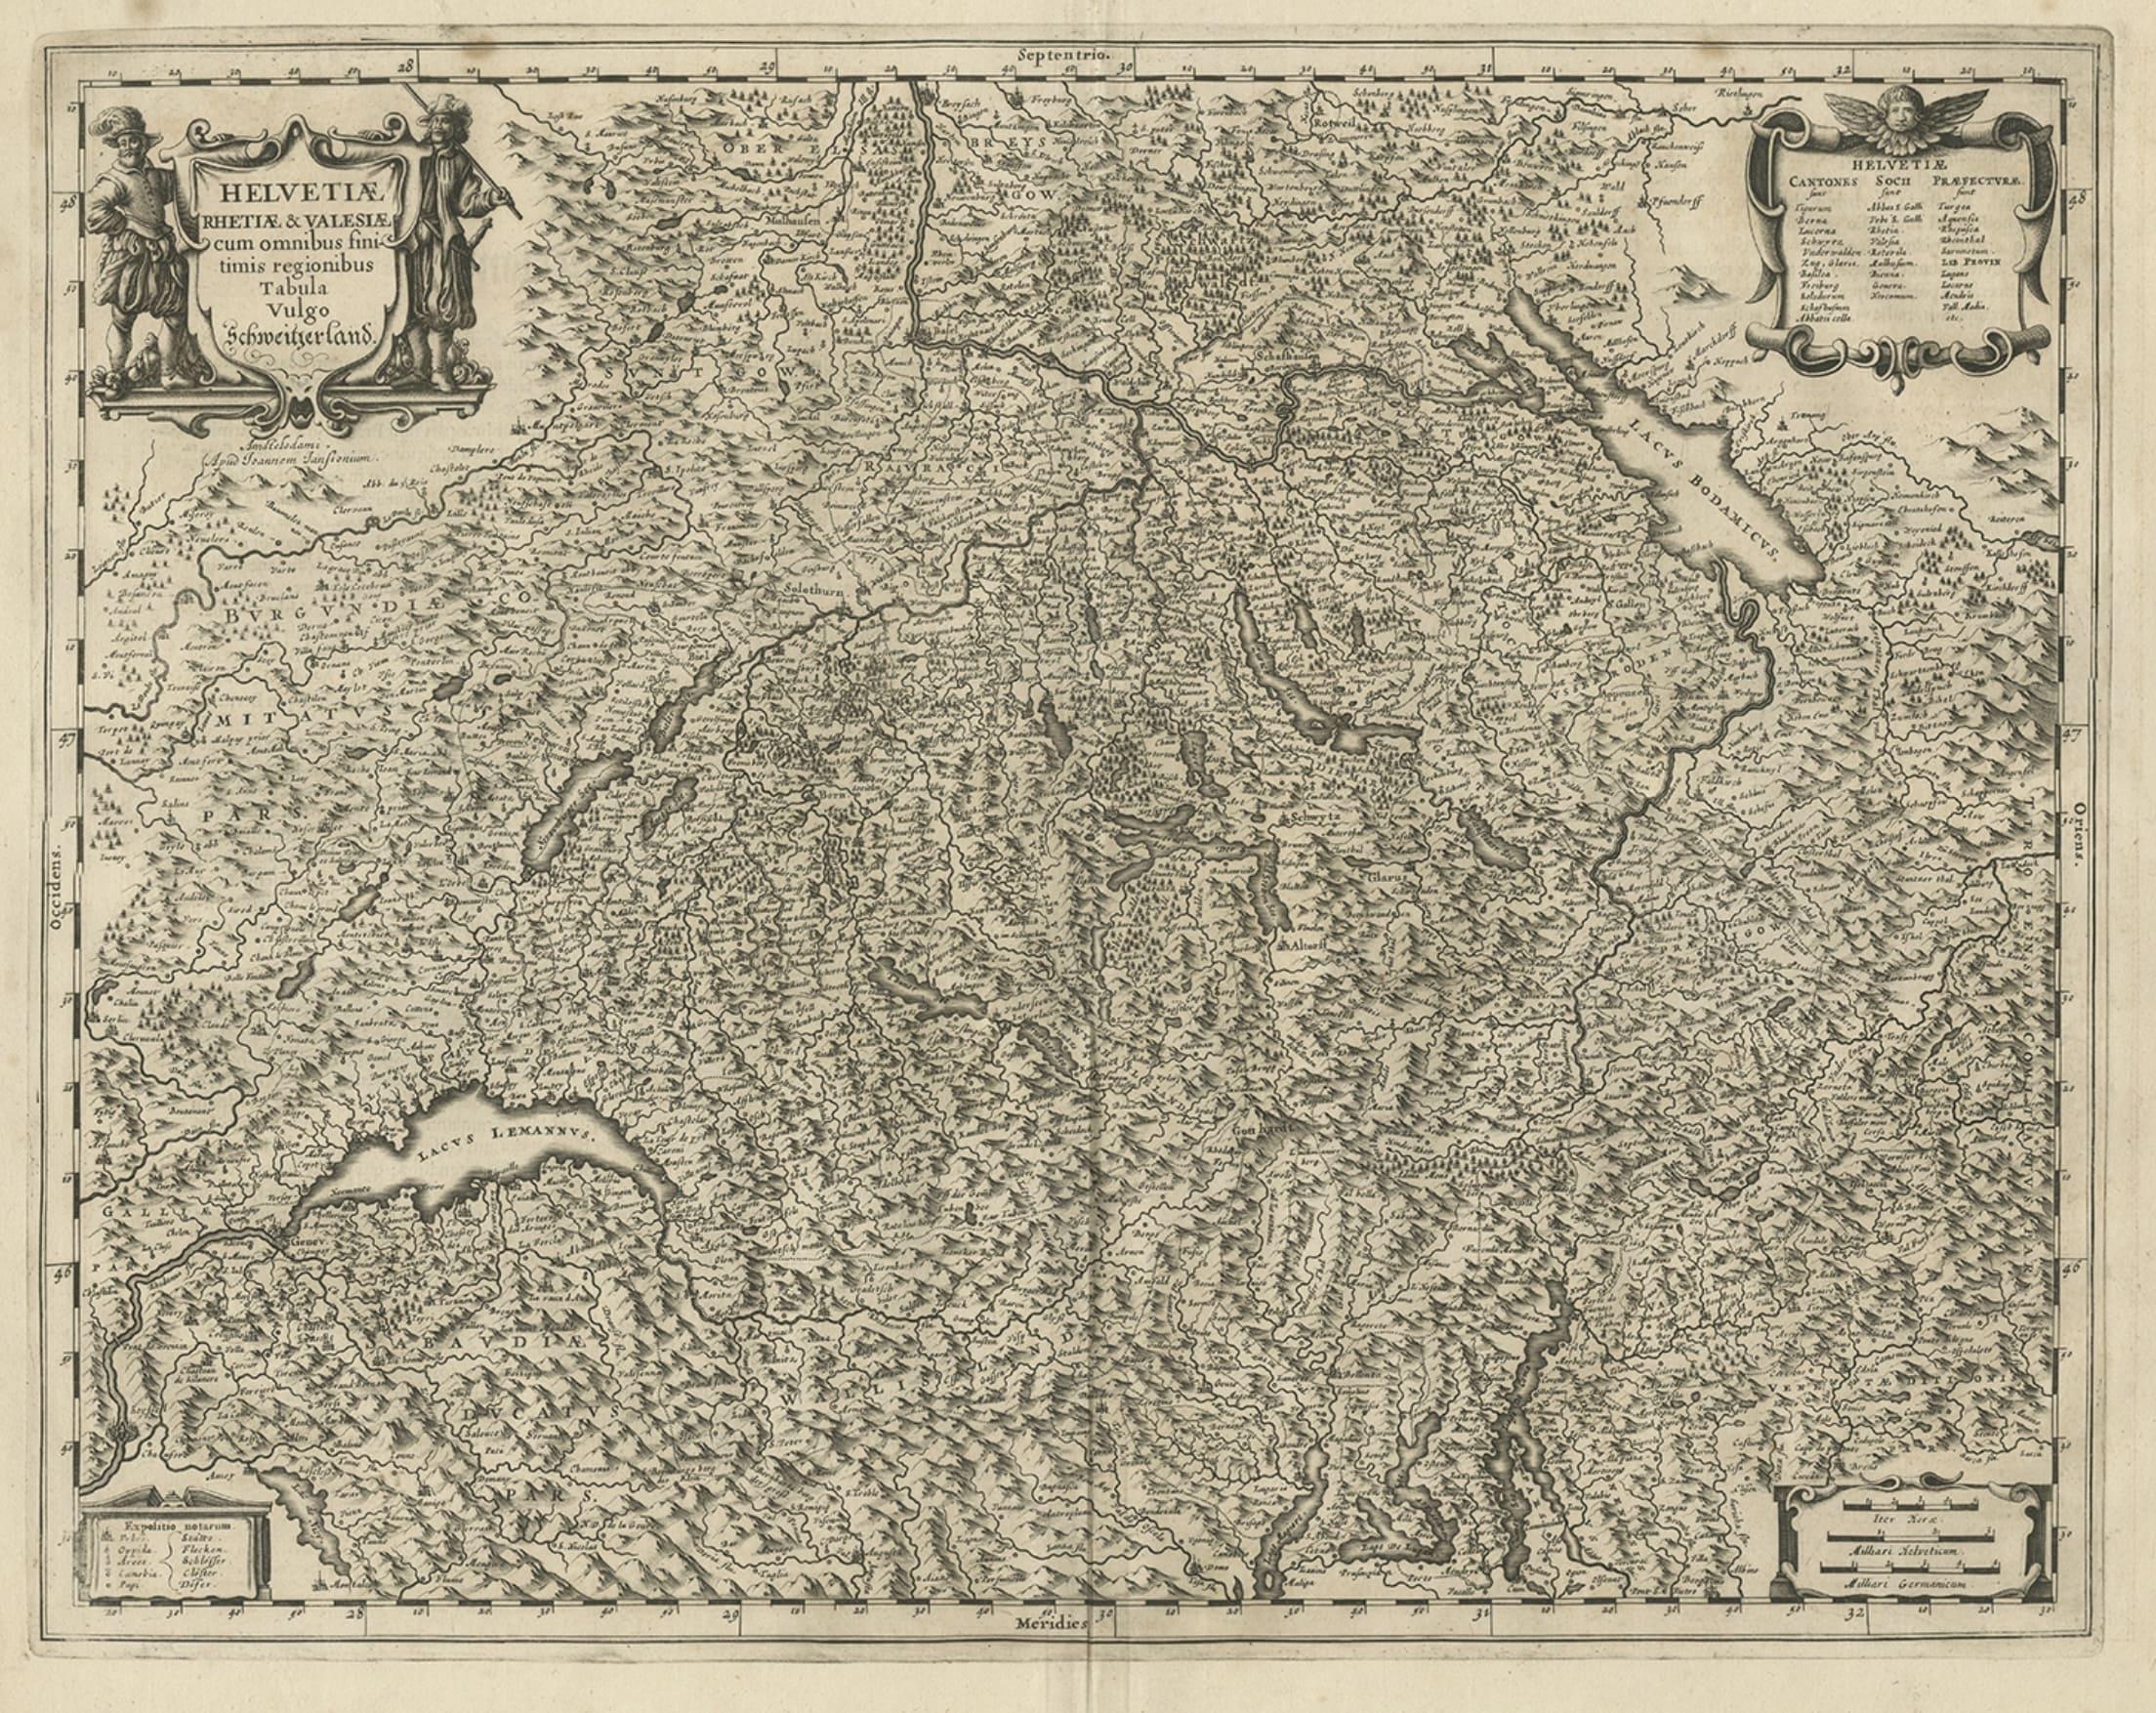 Antique map of Switzerland titled 'Helvetiae Rhetiae & Valesiae'. 

Decorative and detailed map of Switzerland. This map originates from 'Atlas Novus, Sive Theatrum Orbis Orbis Terrarum: In quo Galliae, Helvetiae (..)' by J. Janssonius